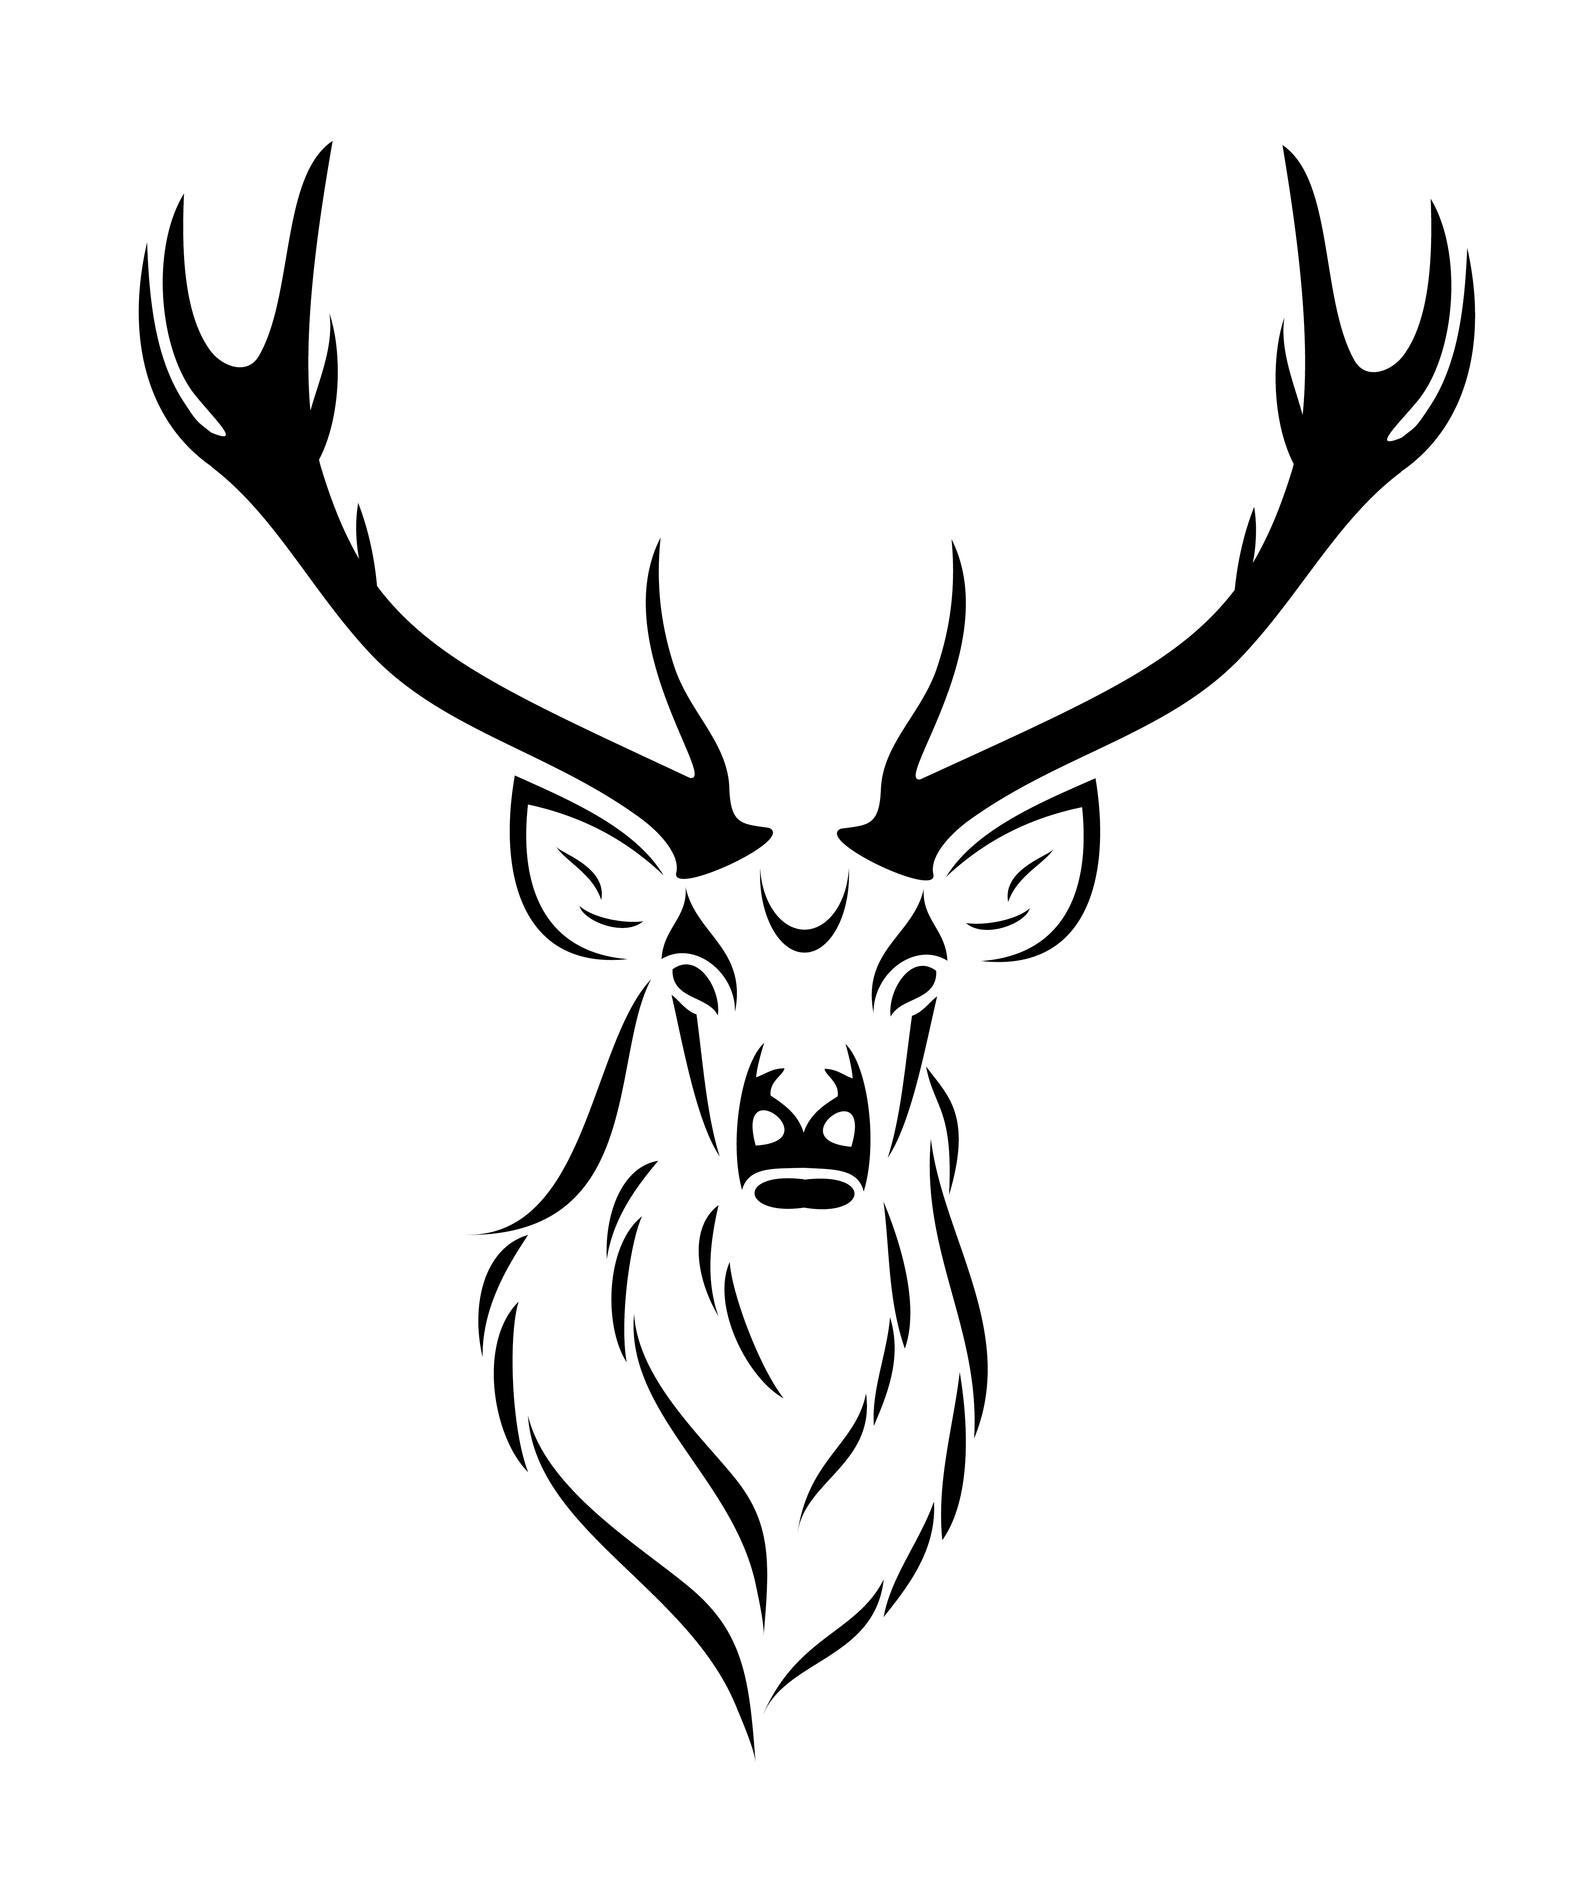 Drawings Of Deer Skulls